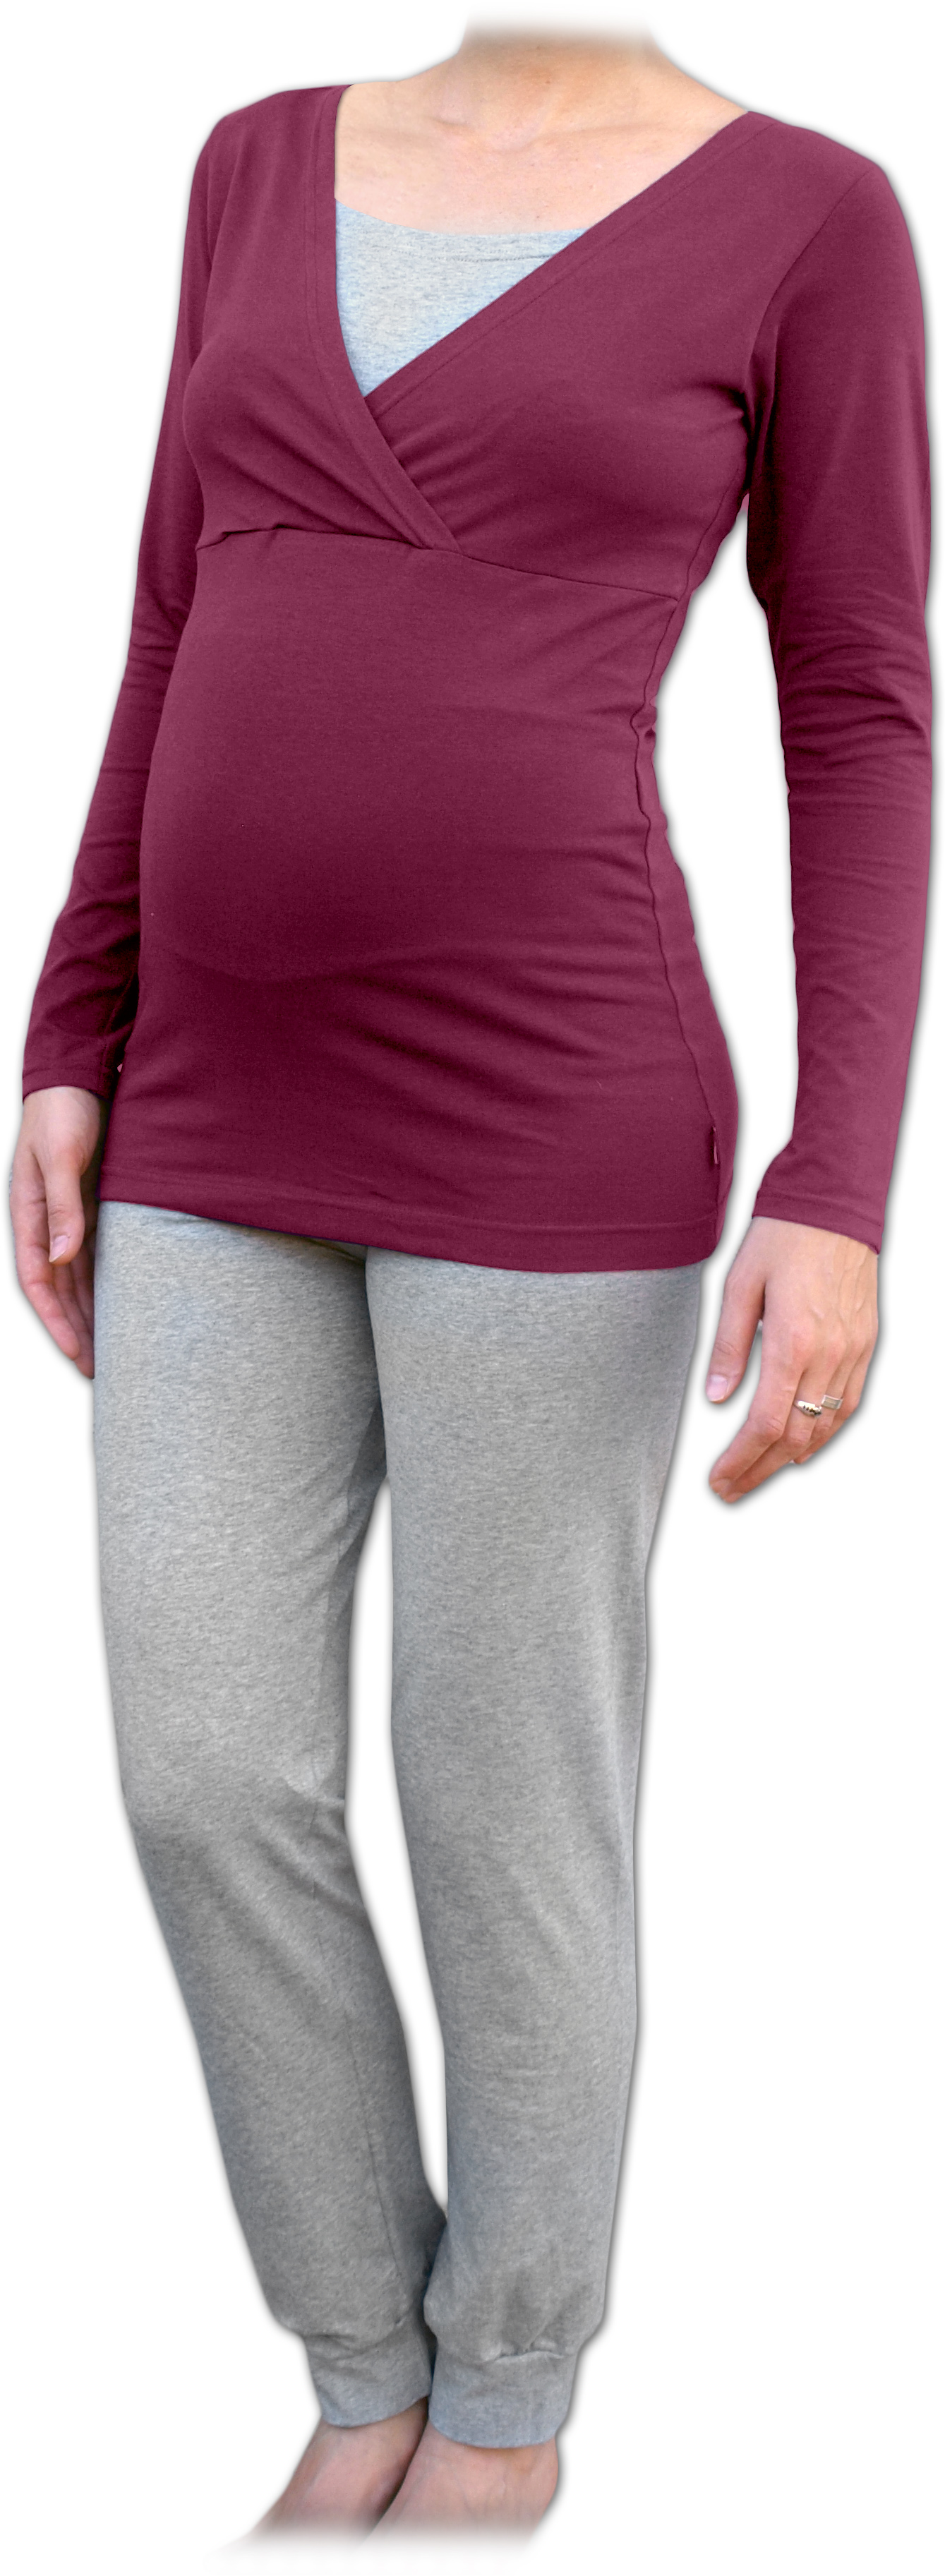 Těhotenské a kojicí pyžamo, dlouhé, cyklámen+šedý melír